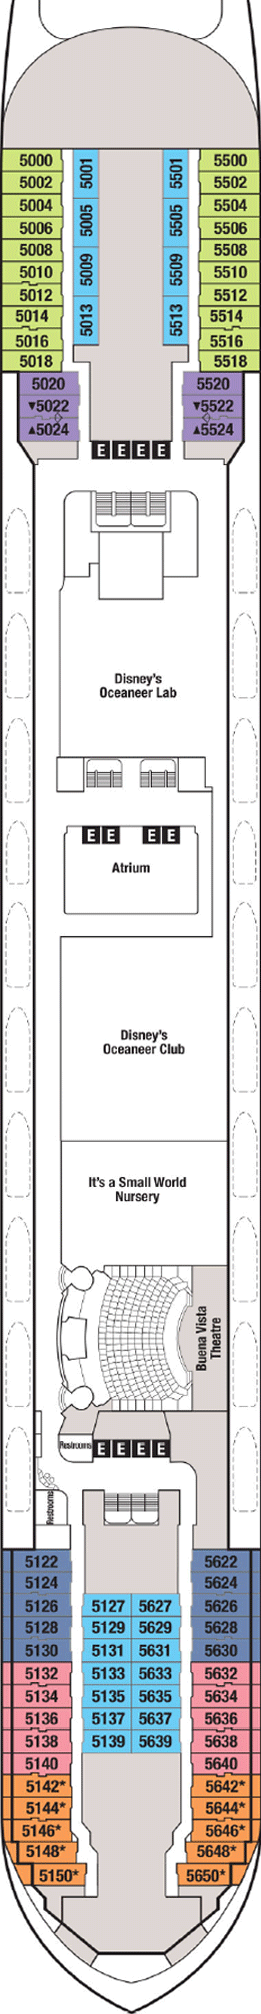 Disney Magic Deck Five